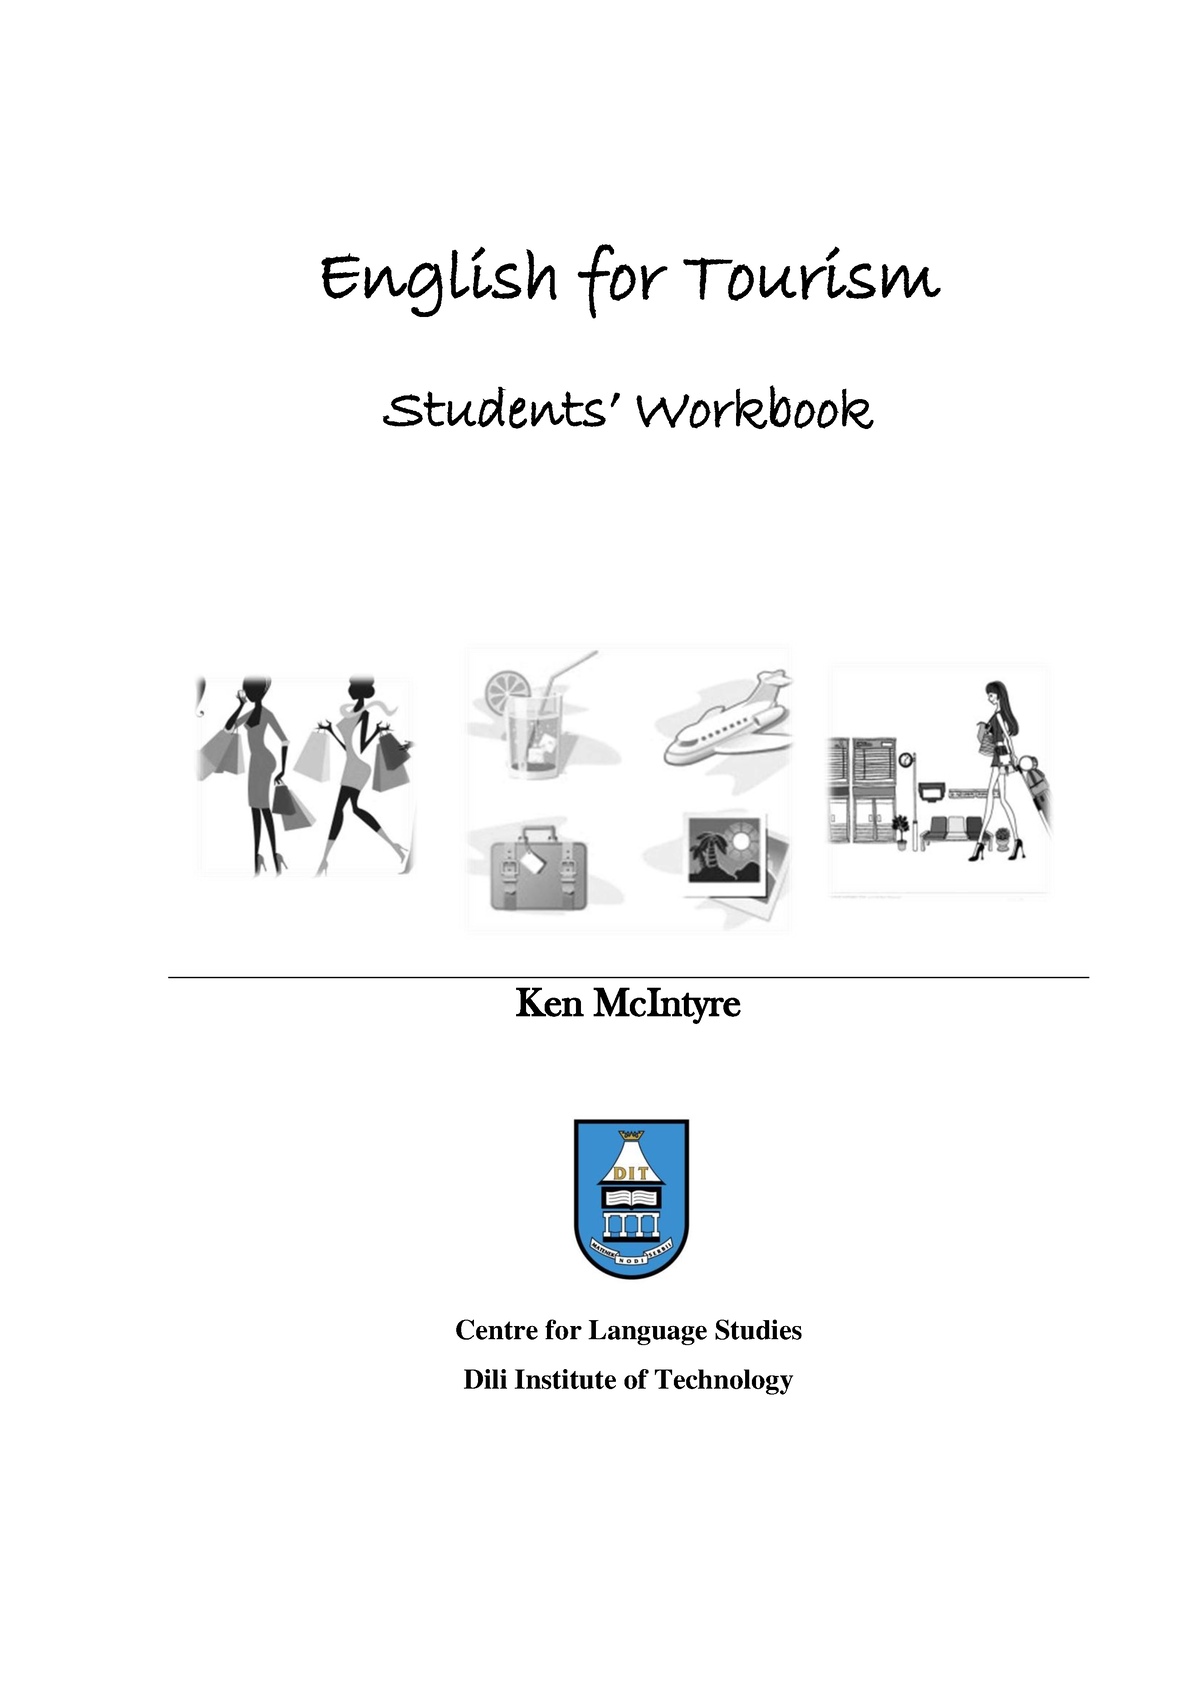 Tourism pdf. English for Tourism. English for Tourism pdf. English for Tourists students book. Academic student Workbook f15e.